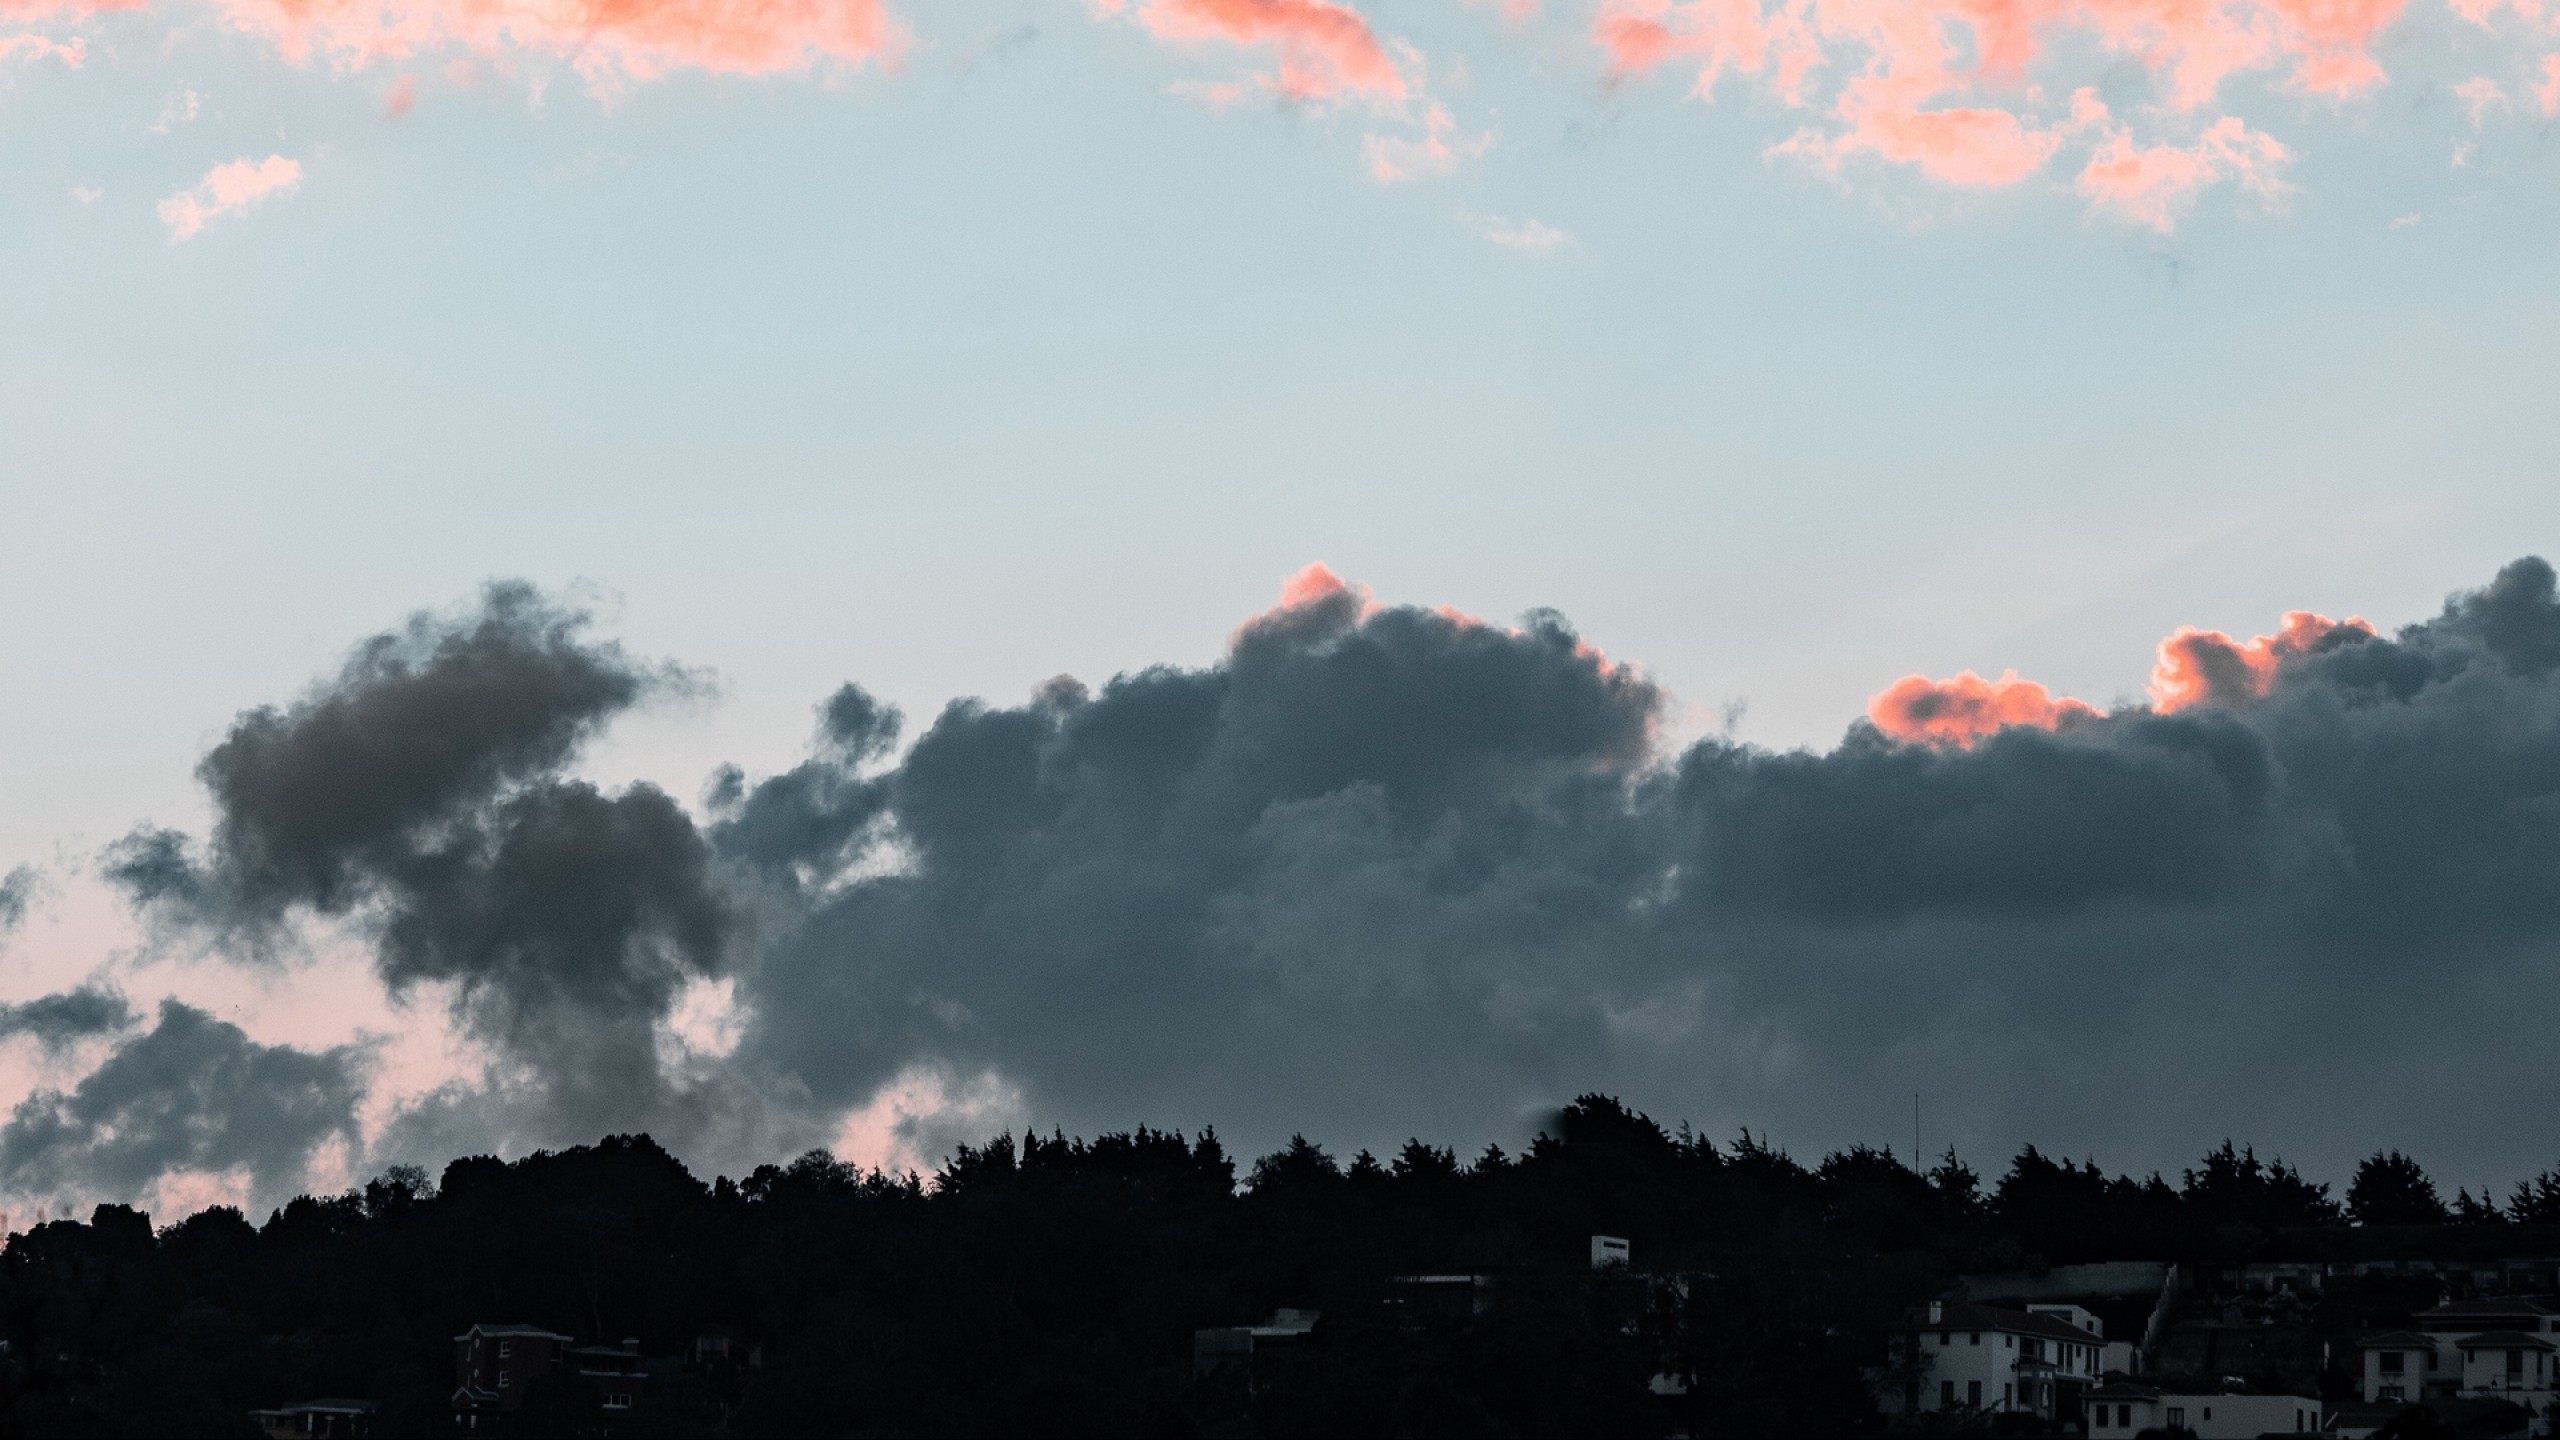 Cloudy evening HD Wallpaper